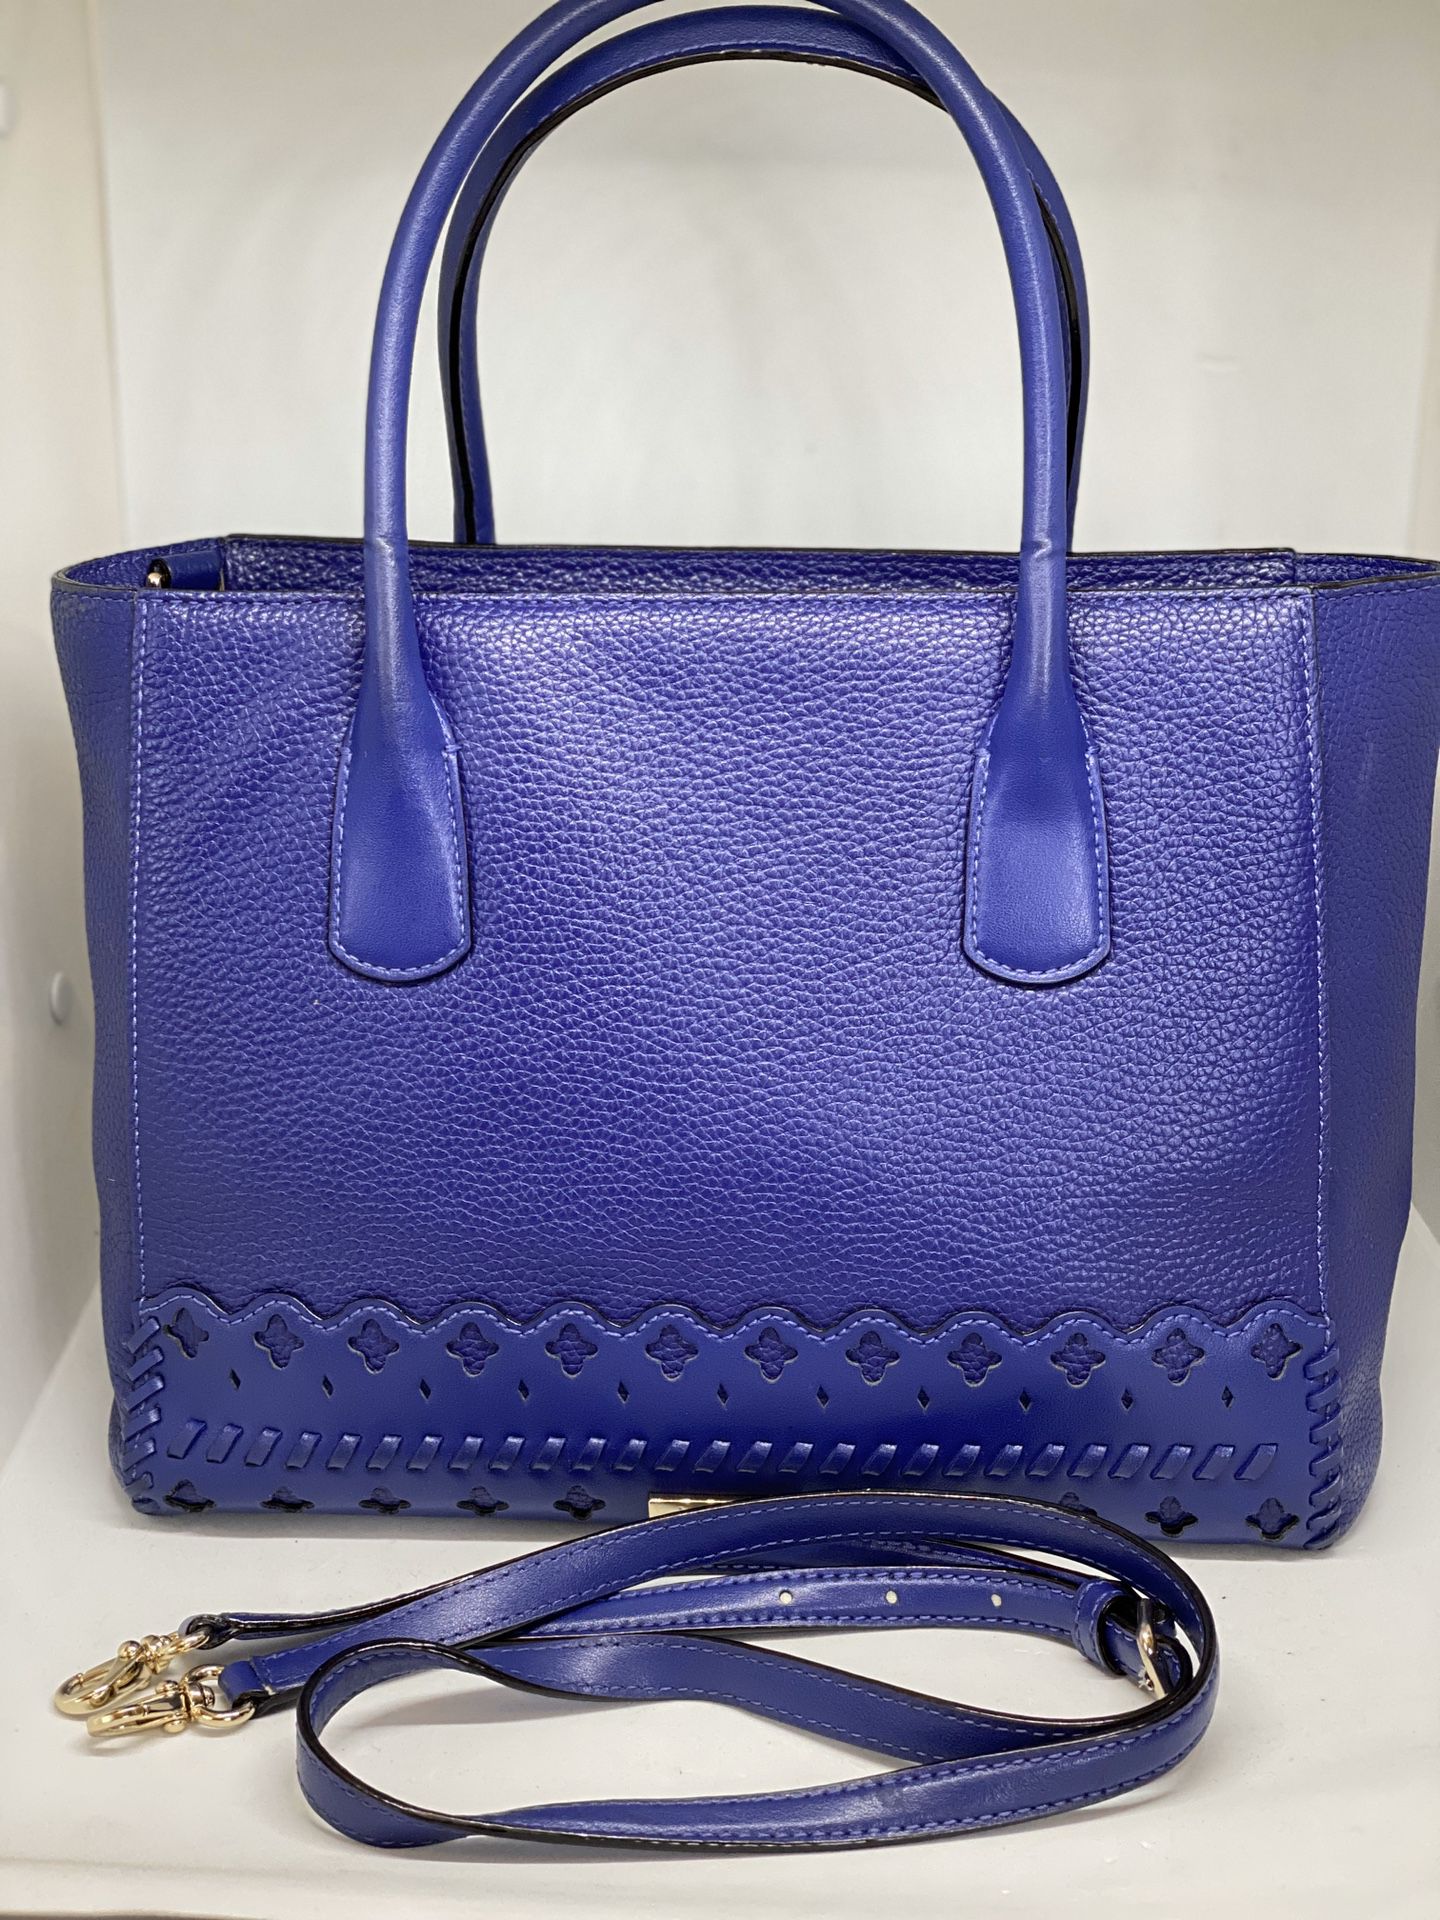 KATE SPADE Blue Leather Satchel Bag